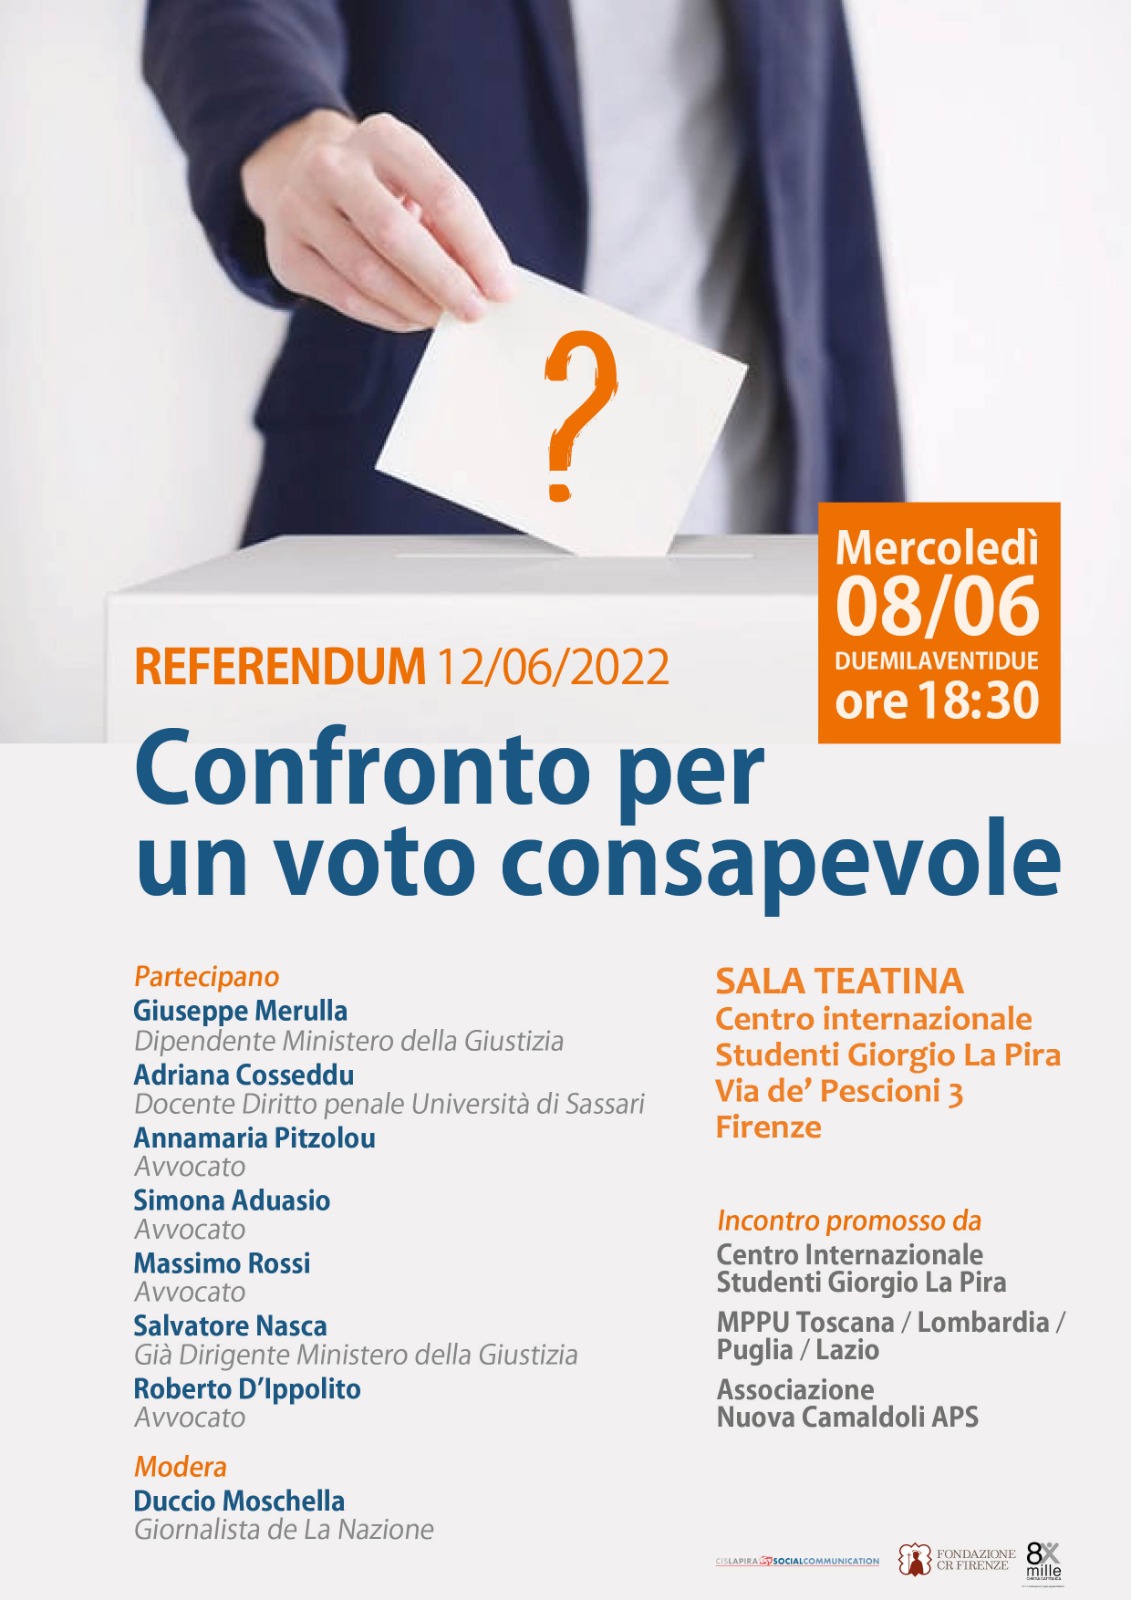 Confronto - Referendum 12 giugno 2022